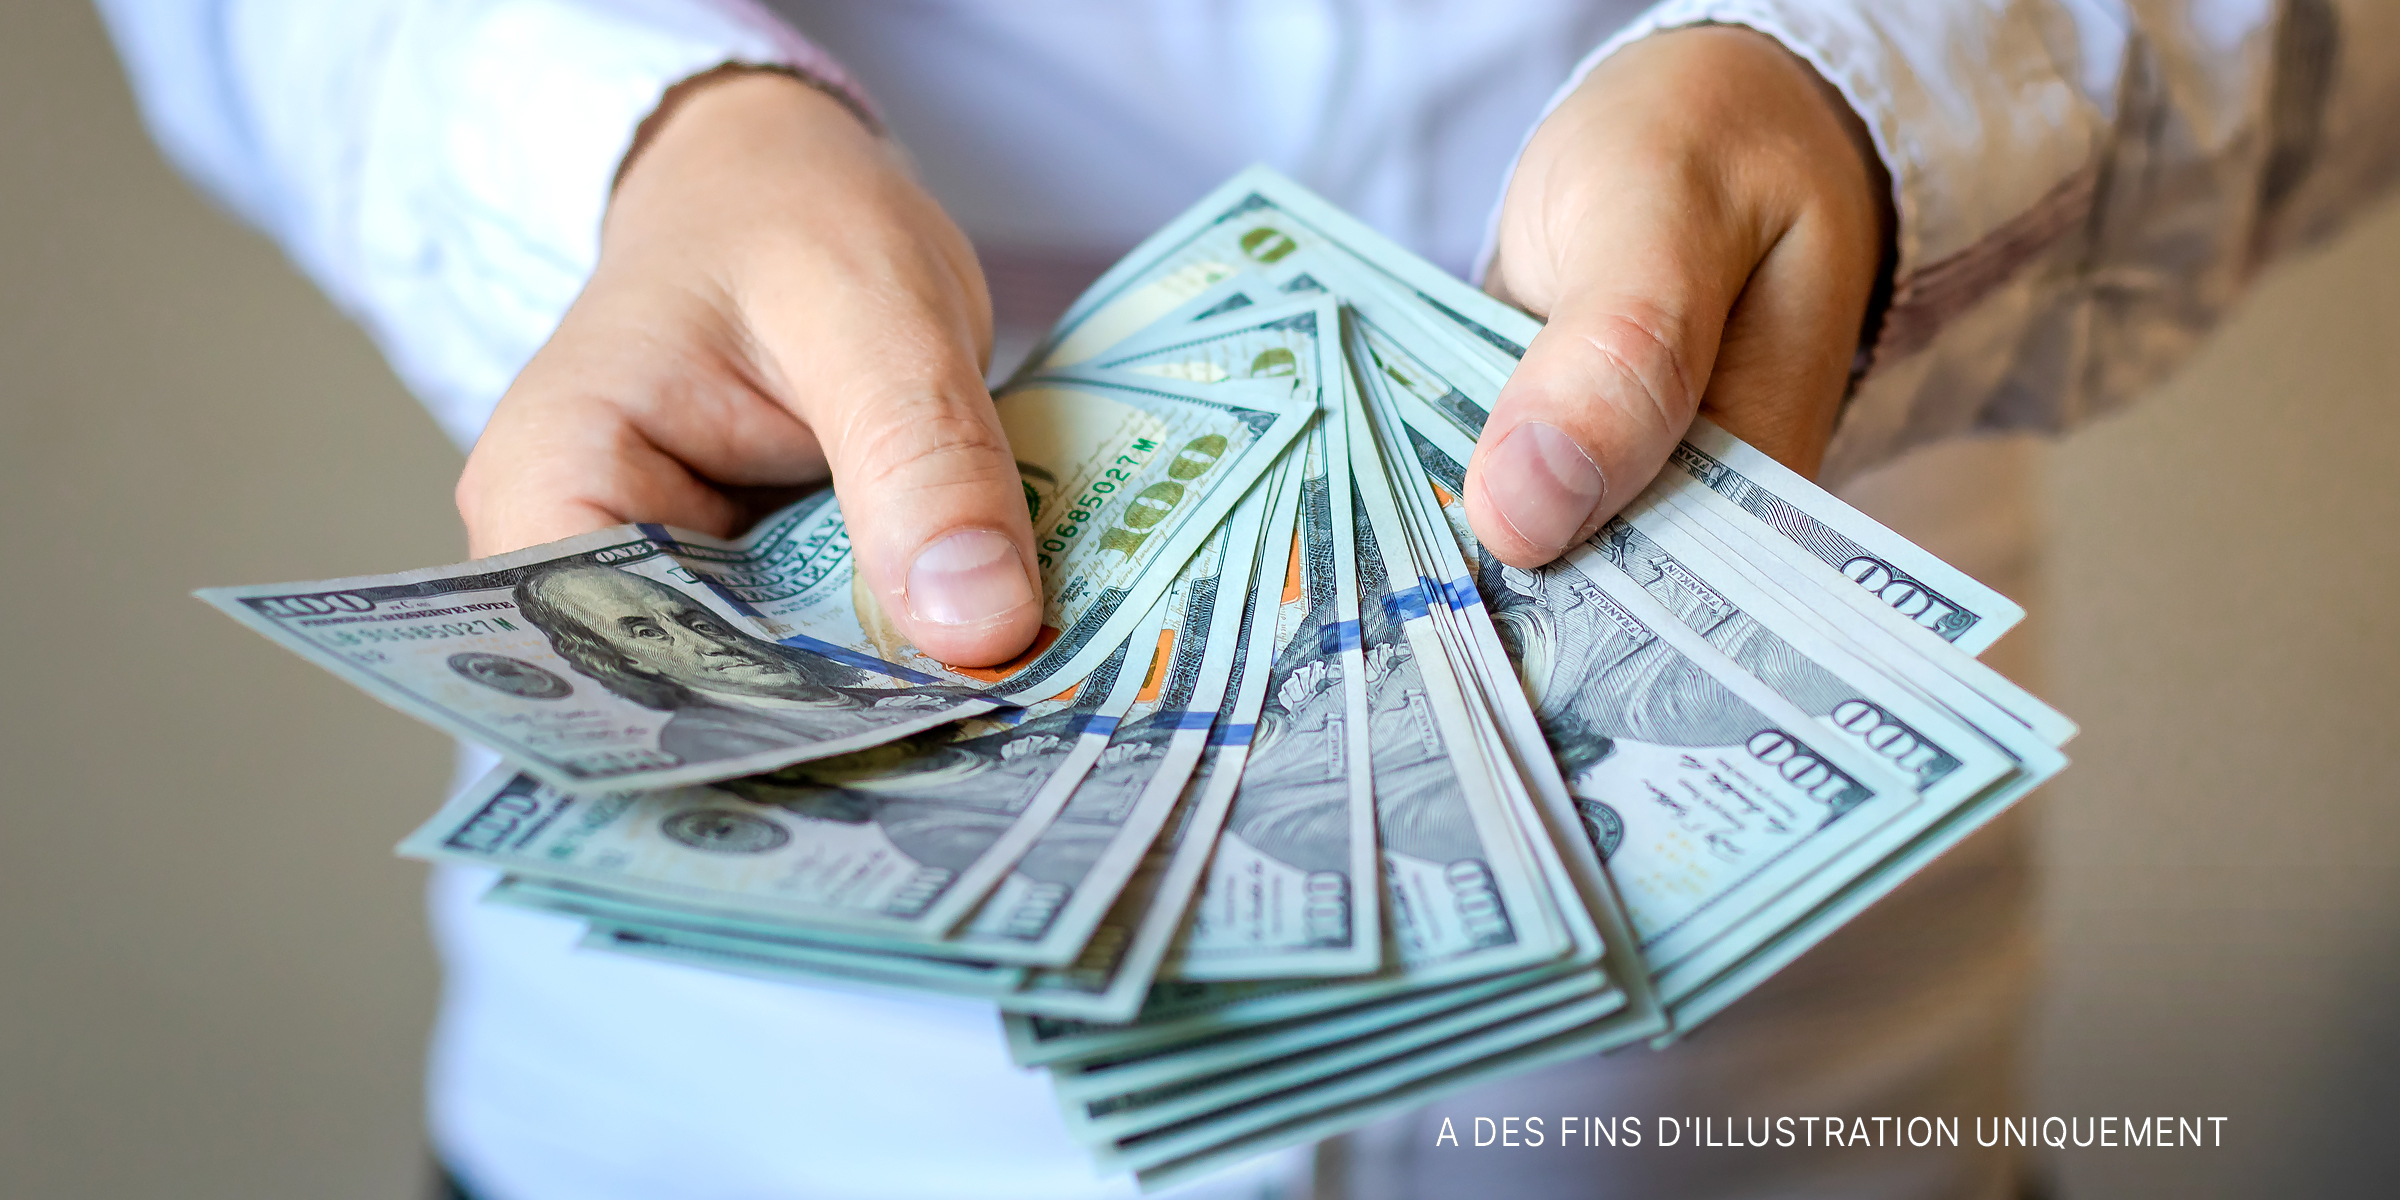 Une personne tenant des billets de banque | Source : Shutterstock